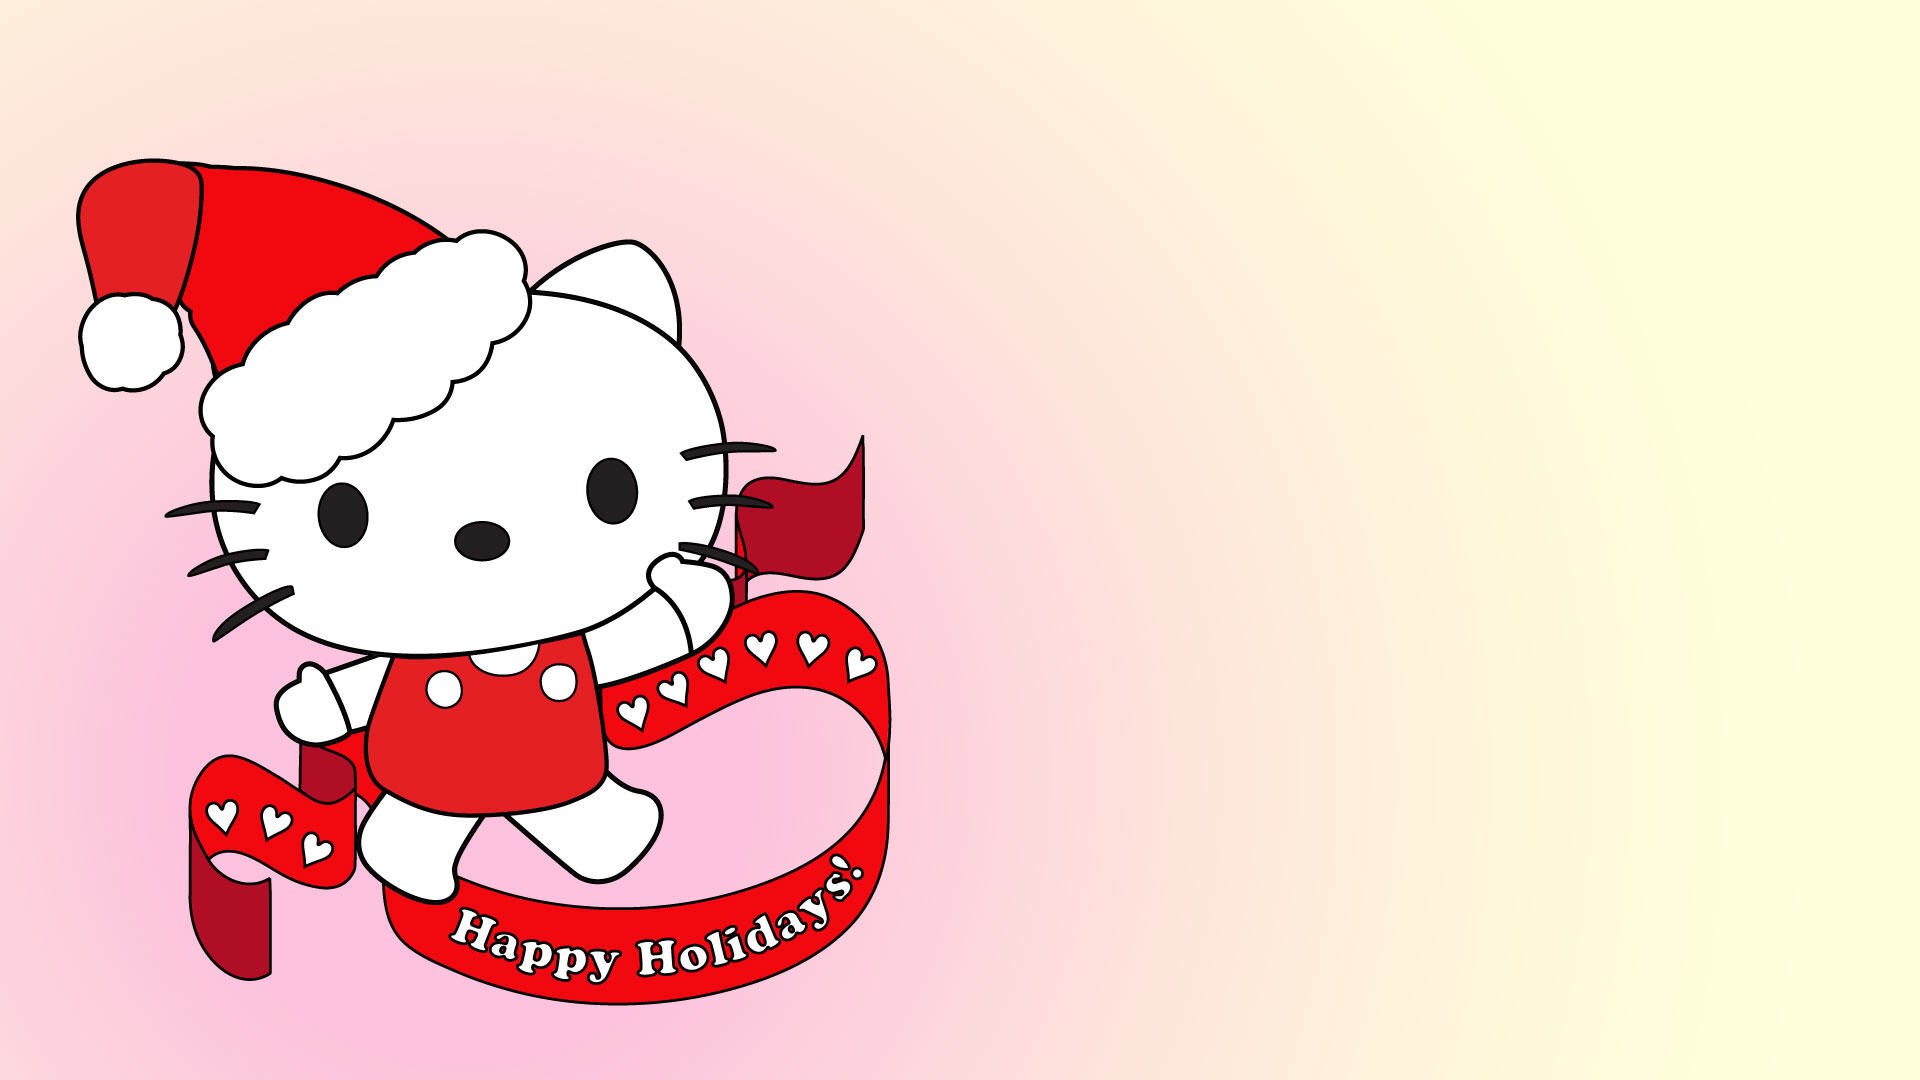 Giáng sinh đến rồi, mùa của niềm vui và tình yêu. Hãy cùng chiêm ngưỡng những hình ảnh bóng nền Giáng sinh tuyệt đẹp, với sự xuất hiện của Hello Kitty, chắc chắn sẽ giúp bạn cảm thấy ấm áp trong mùa lễ này.